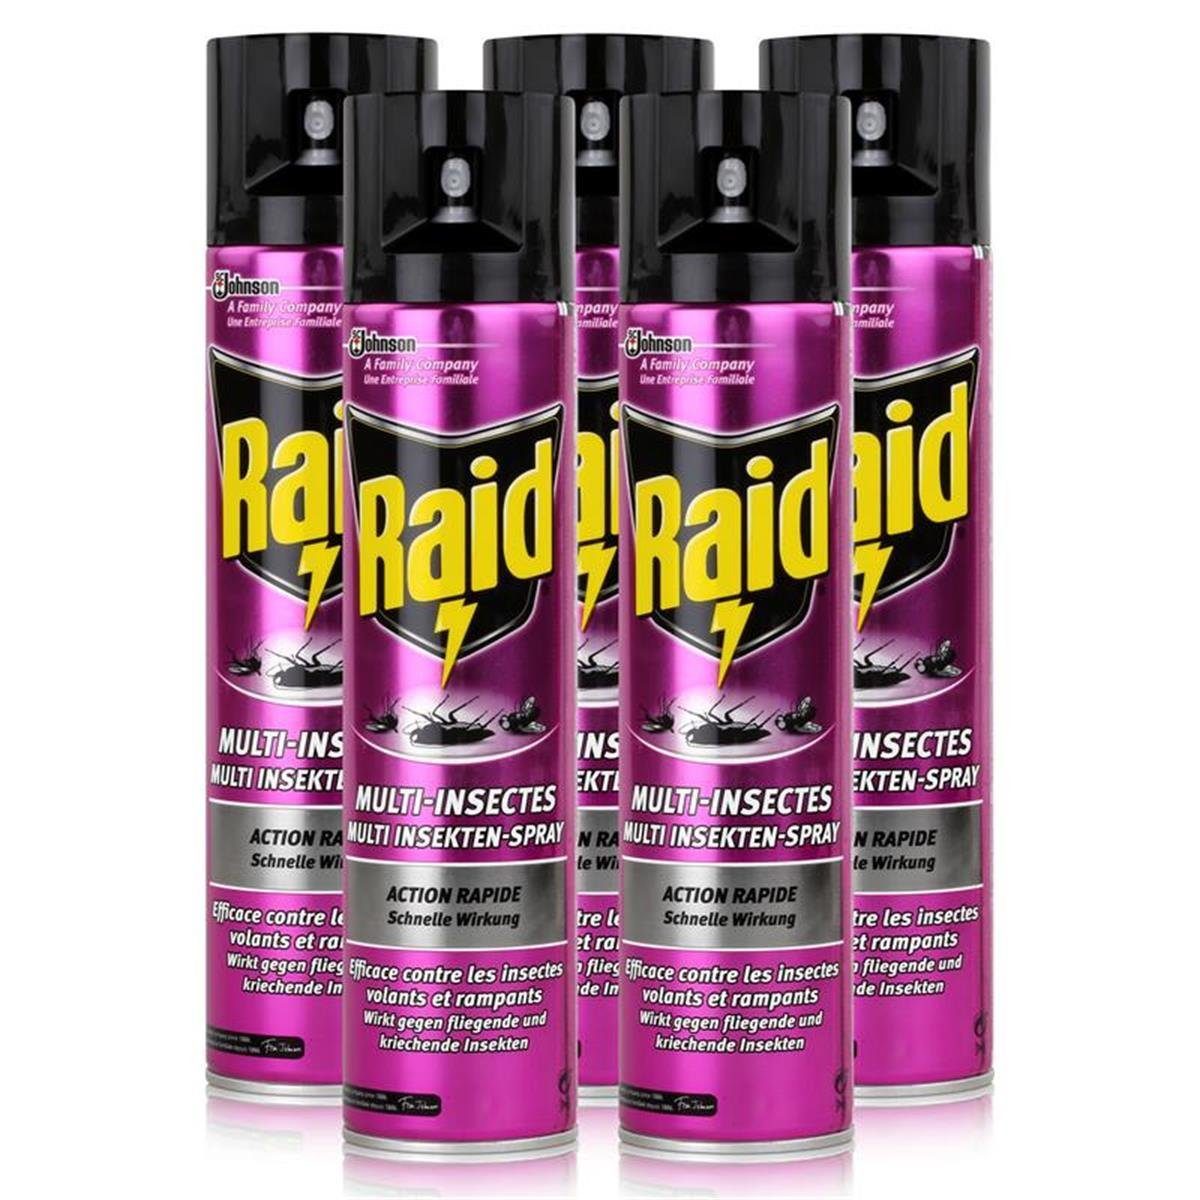 Raid Insektenfalle 5x Raid Multi Insekten-Spray Frischer Duft 400 ml - Wirkt sicher und s